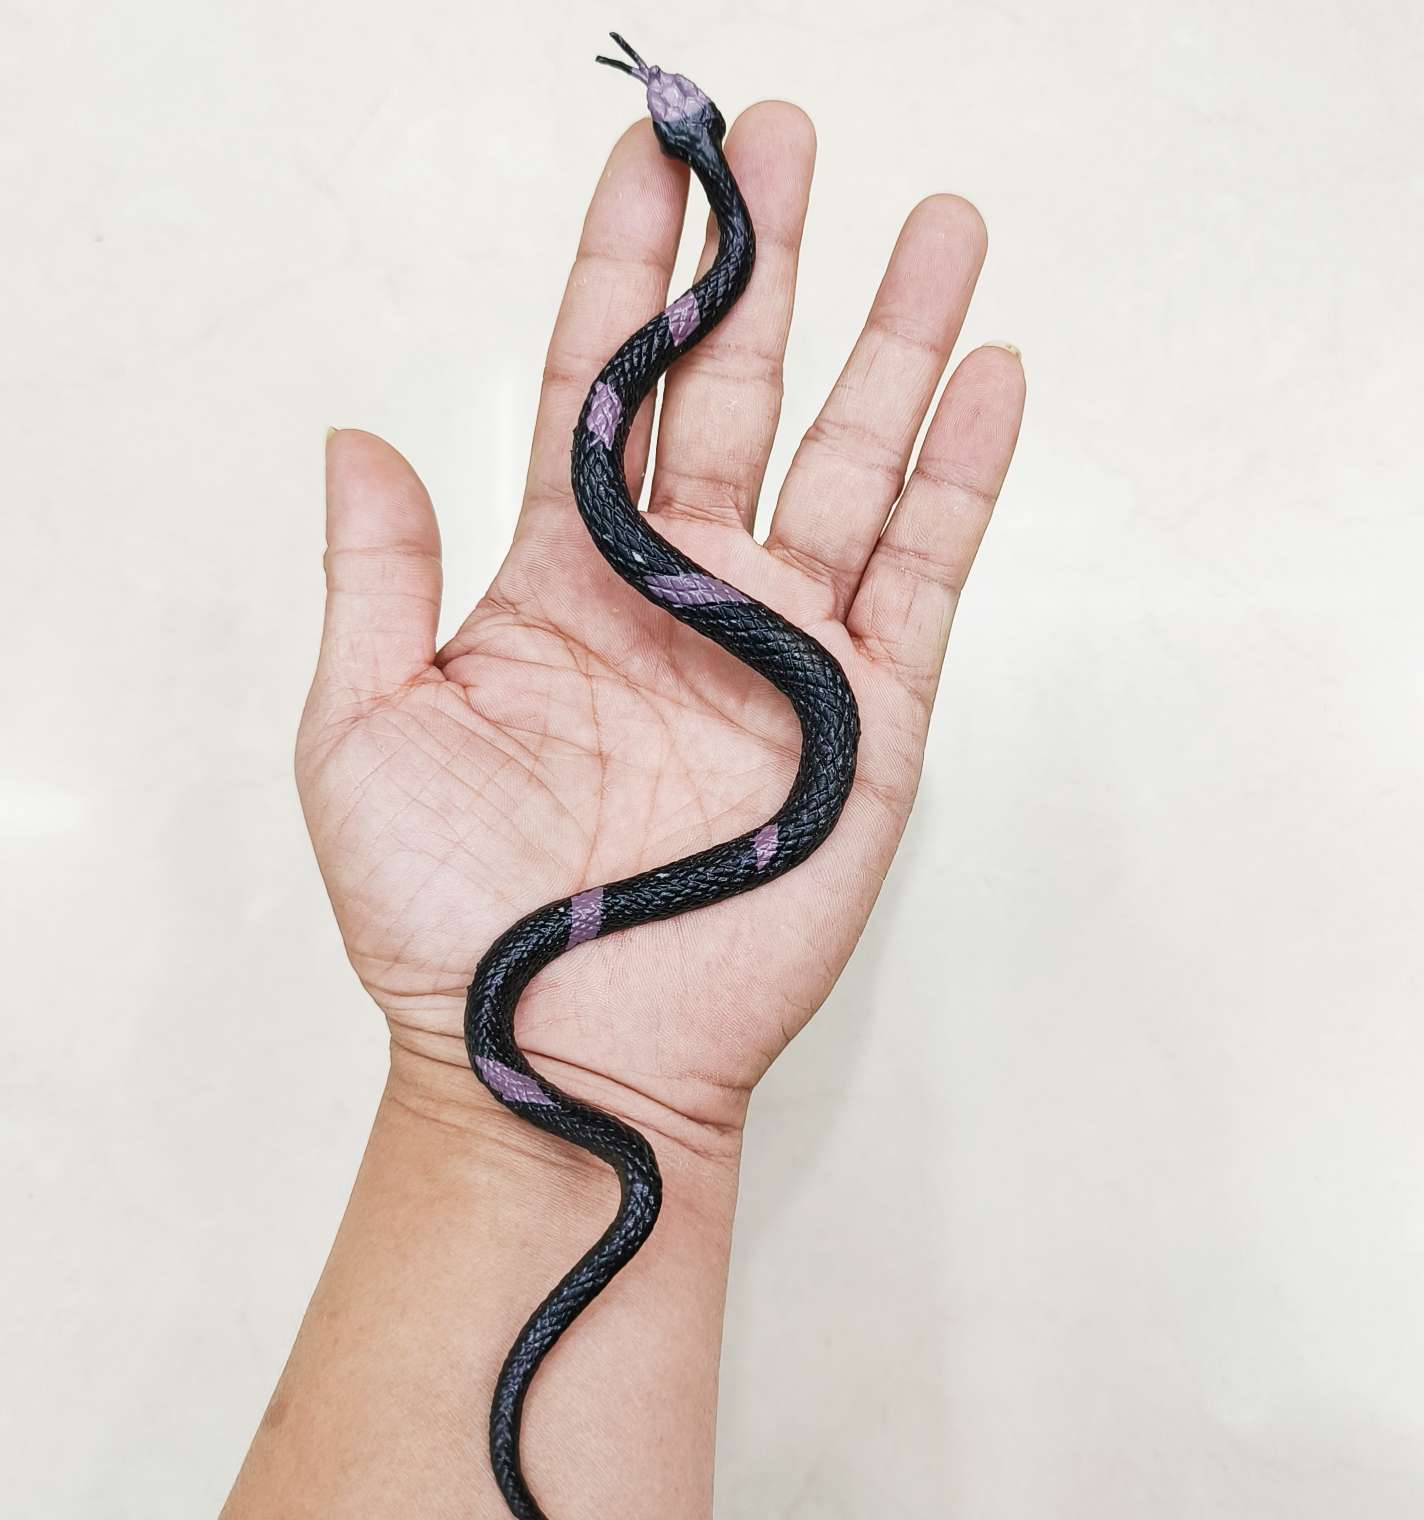 仿真动物蛇玩具塑胶模型爬行动物整蛊科教儿童认证摆件其他配件详情图9